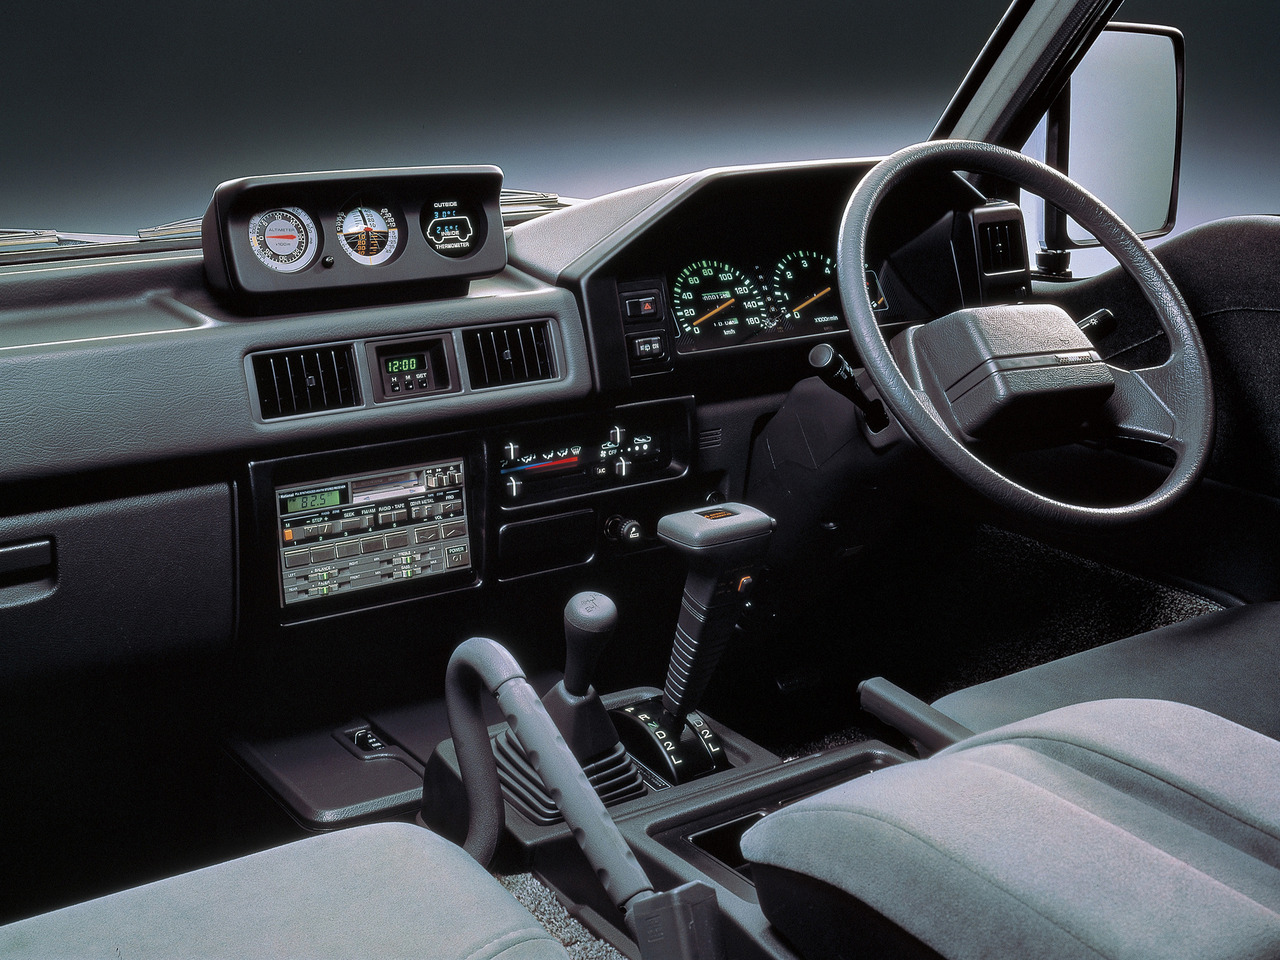 MITSUBISHI DELICA 4WD interior